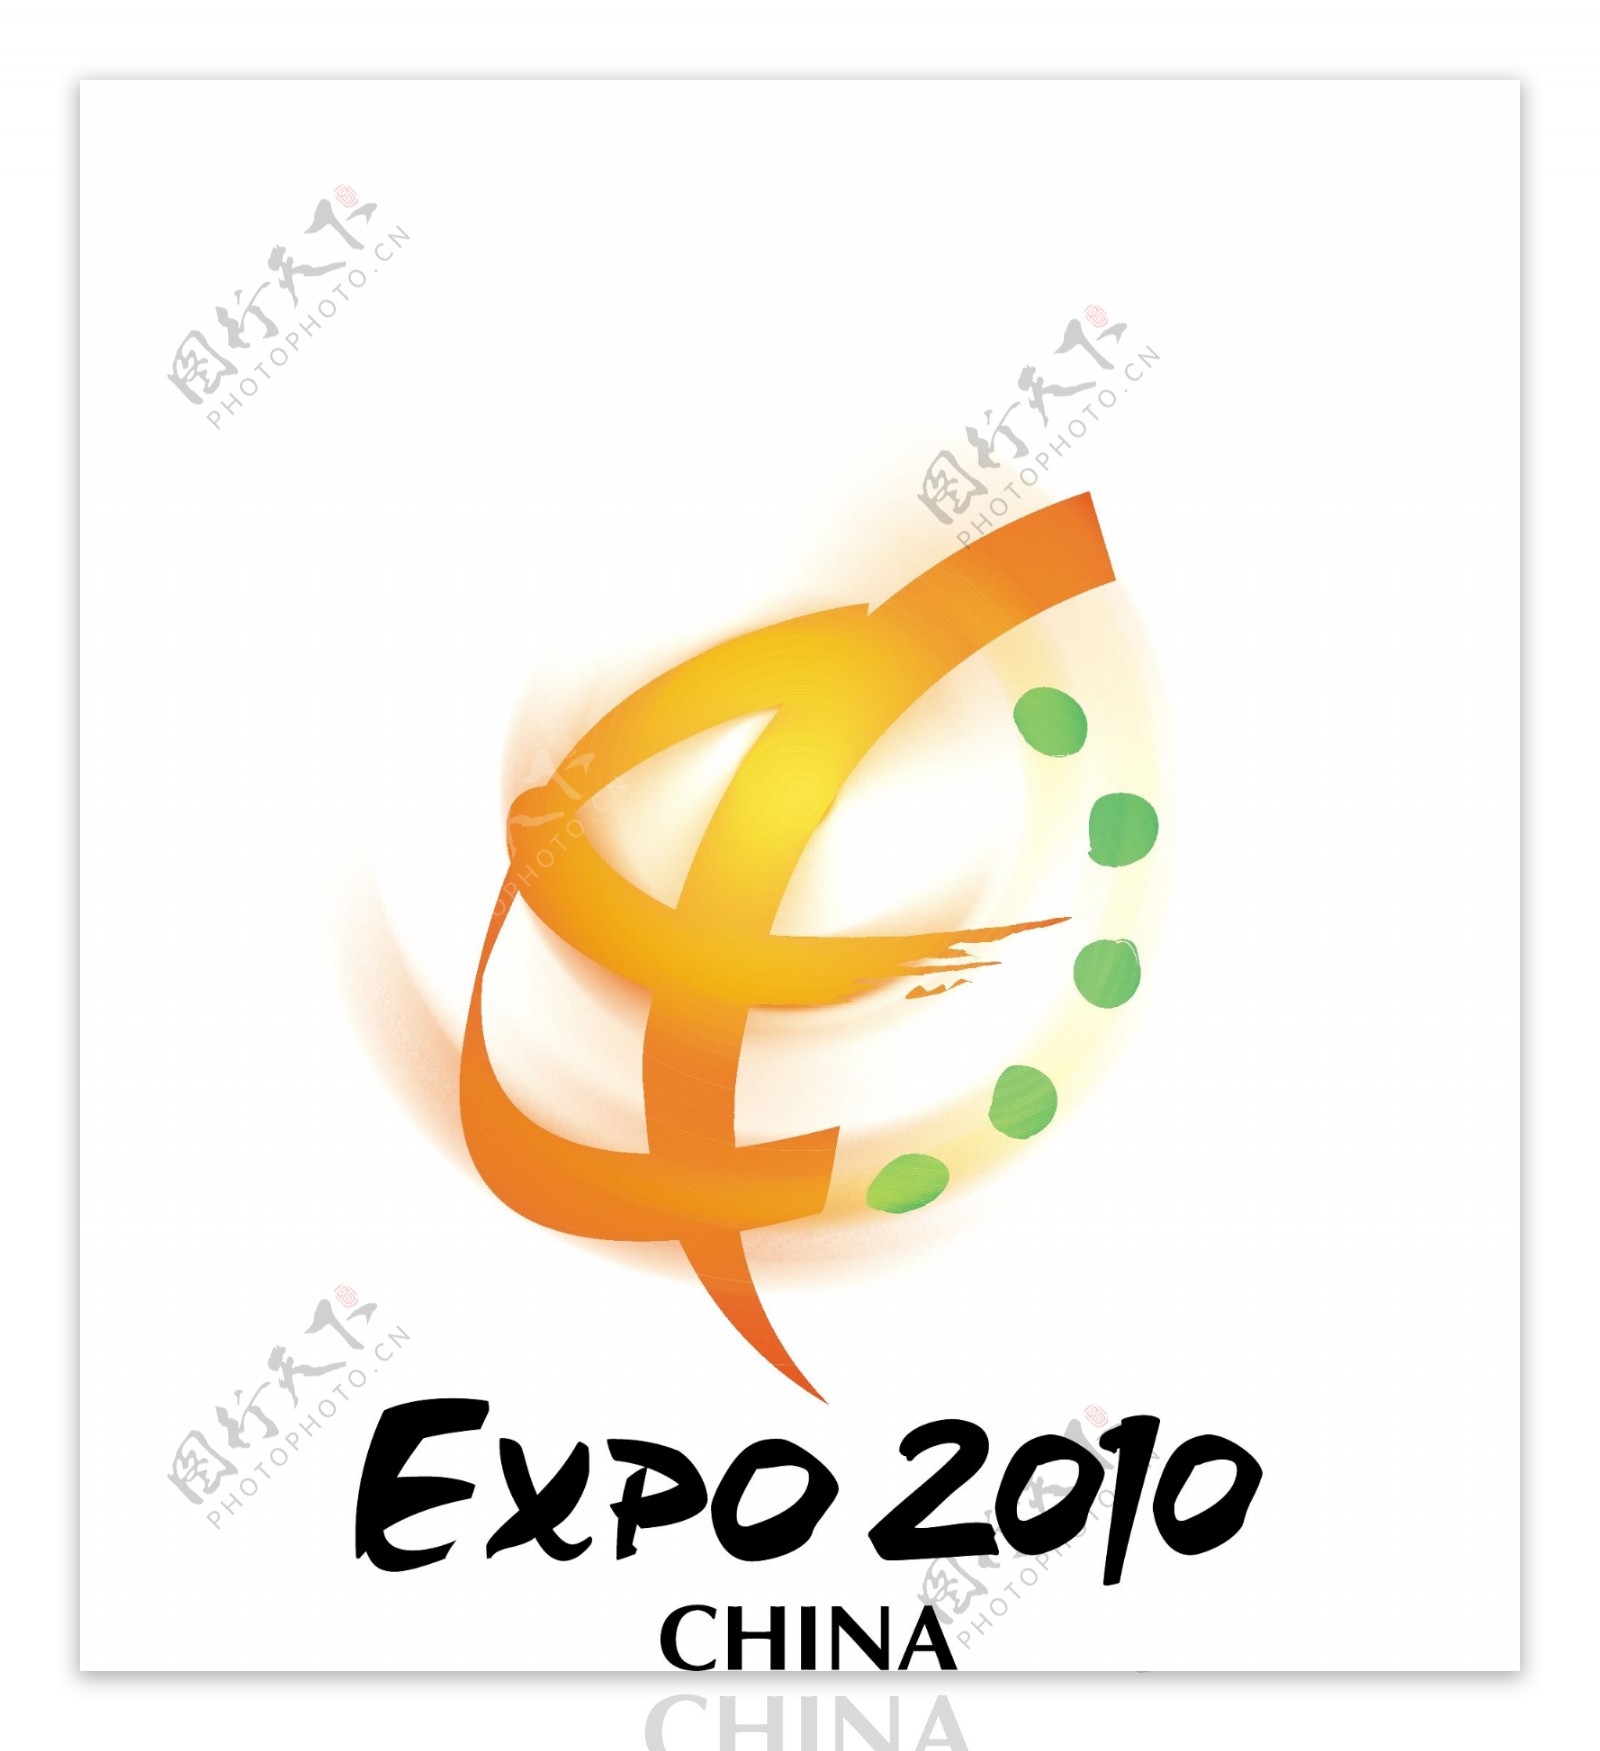 2010中国世博会